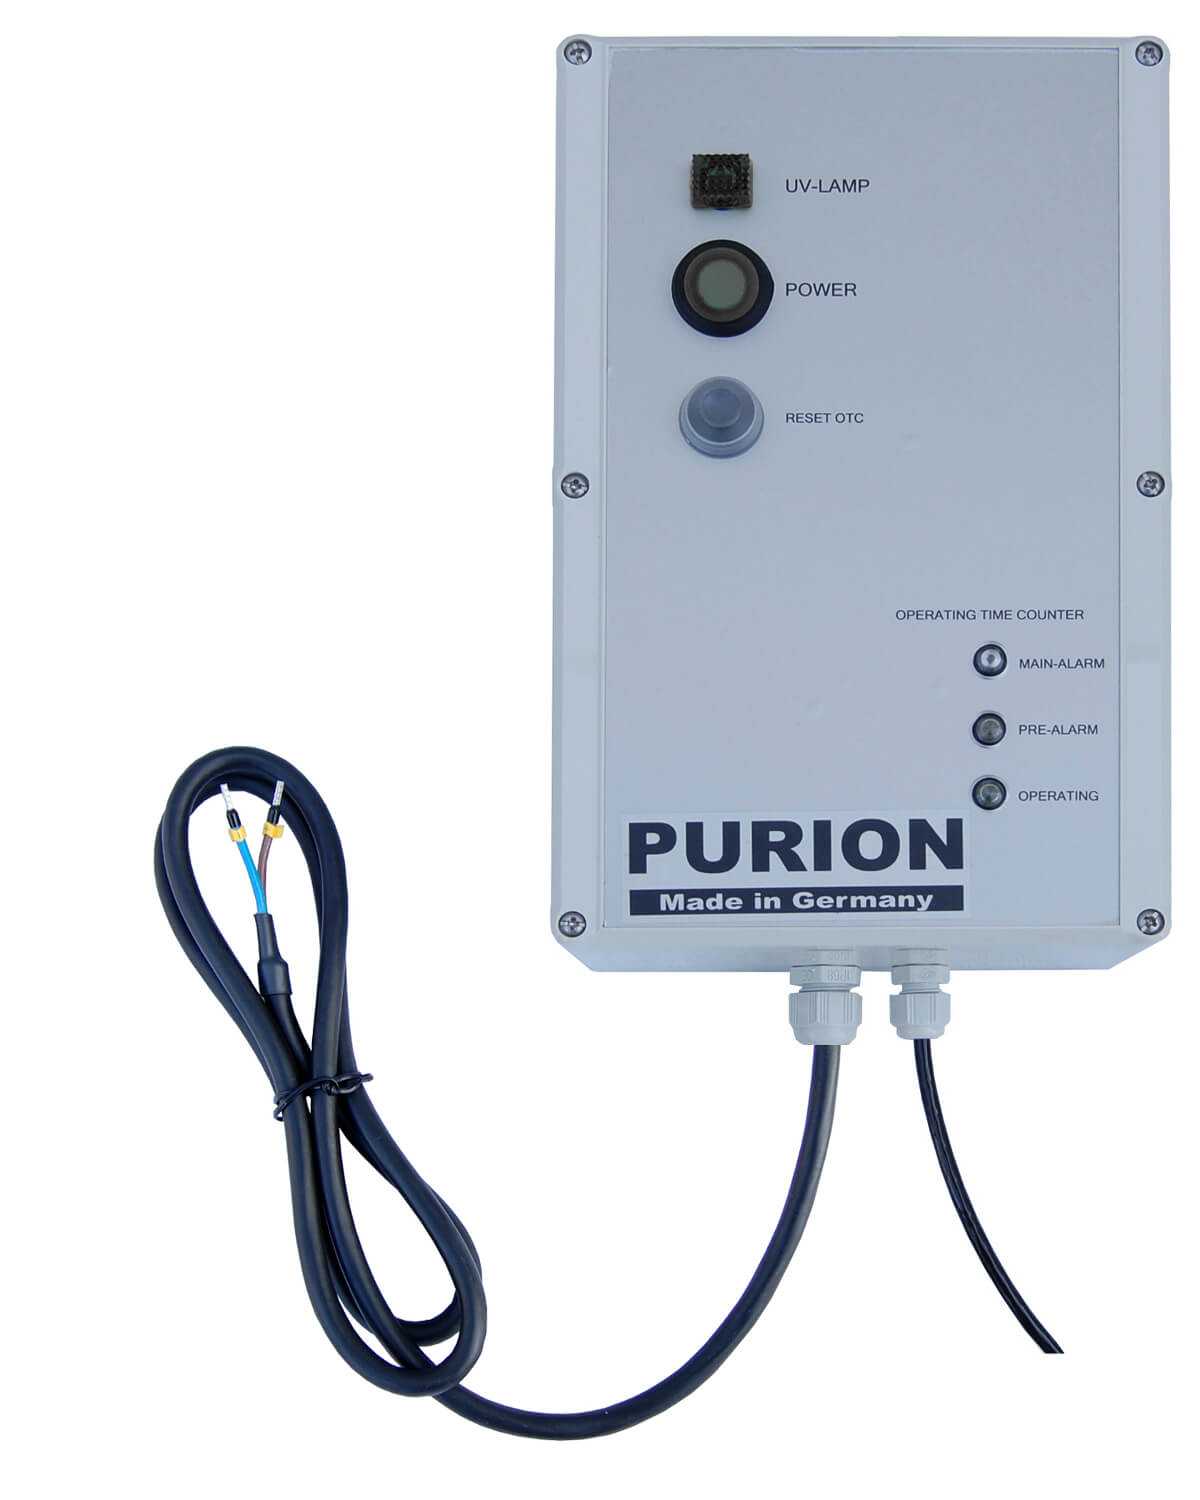 Das PURION 1000 OTC Bundle der Purion GmbH ist ein hochwirksames Wasserdesinfektionssystem, das die Selbstversorgung mit Trinkwasser gewährleistet. Dank seiner fortschrittlichen Technologie bietet das PURION 1000 OTC Bundle eine zuverlässige und effiziente Wassersterilisation.